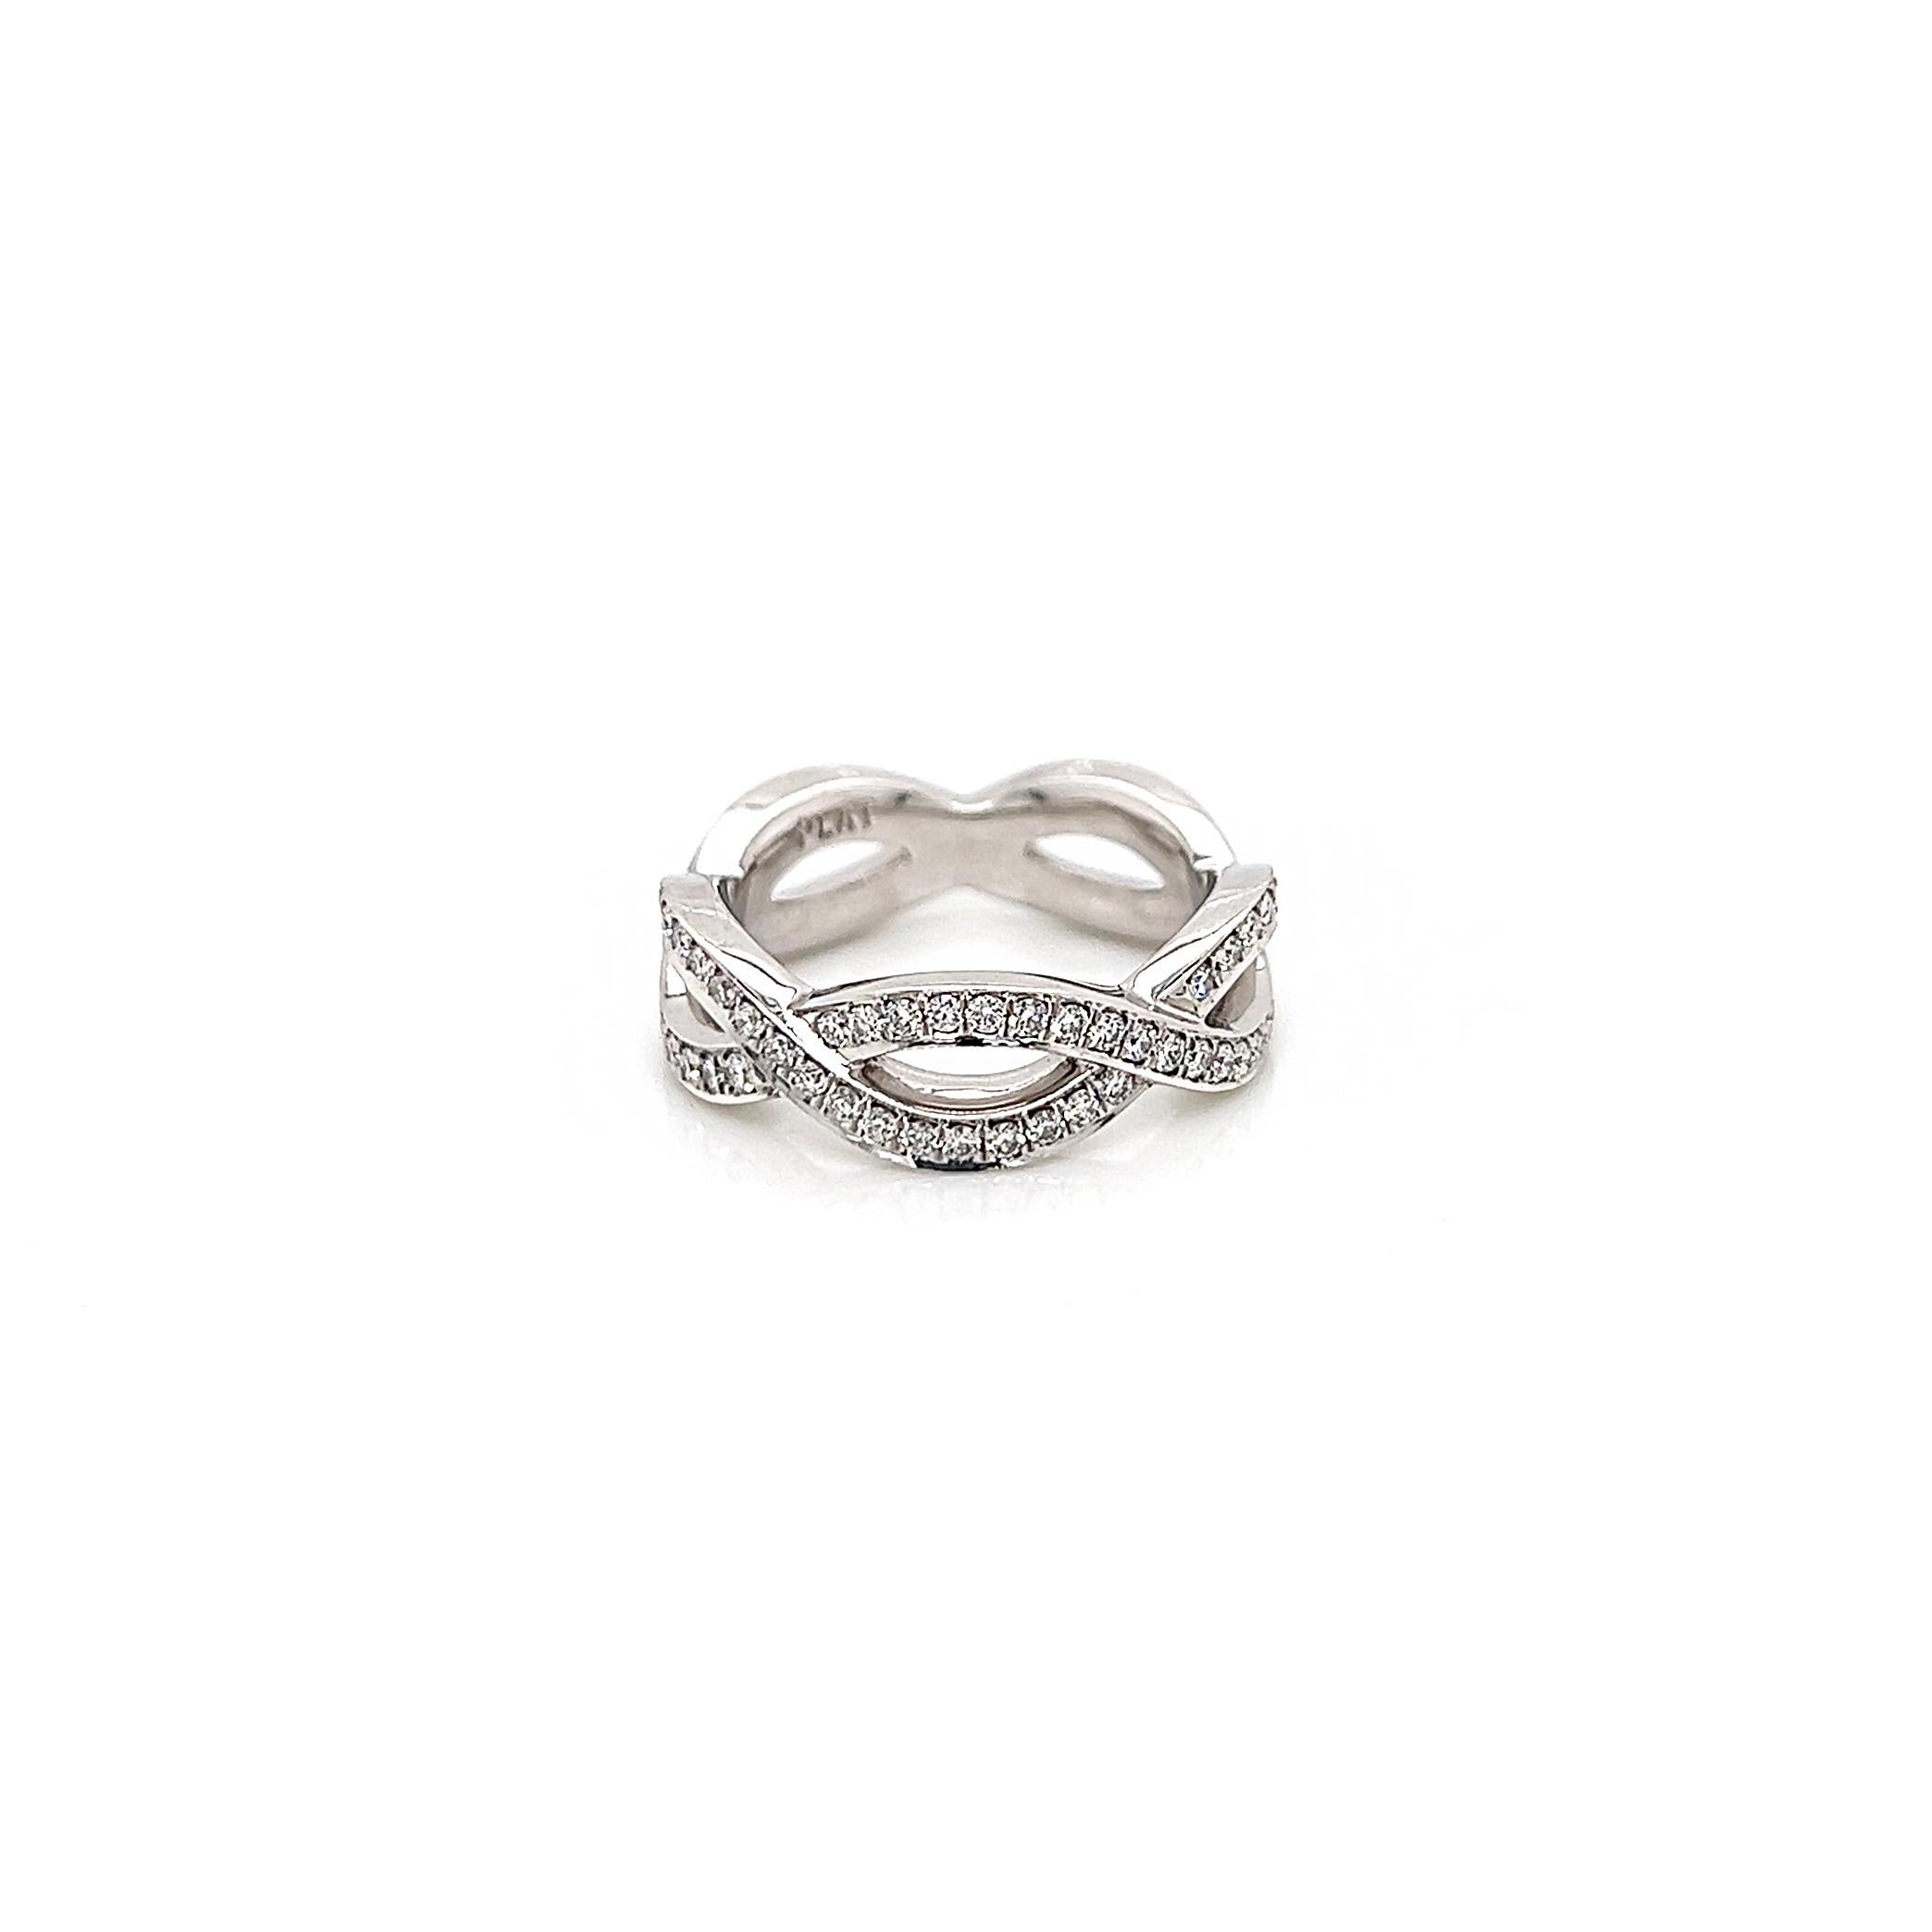 0.bracelet éternité 85 carats pour femme avec diamants sertis en pavé

-Type de métal : Platine
-diamants naturels ronds de 0,85 carat
-Couleur F-G
-VS Clarté

-Taille 6.25

Fabriqué à New York